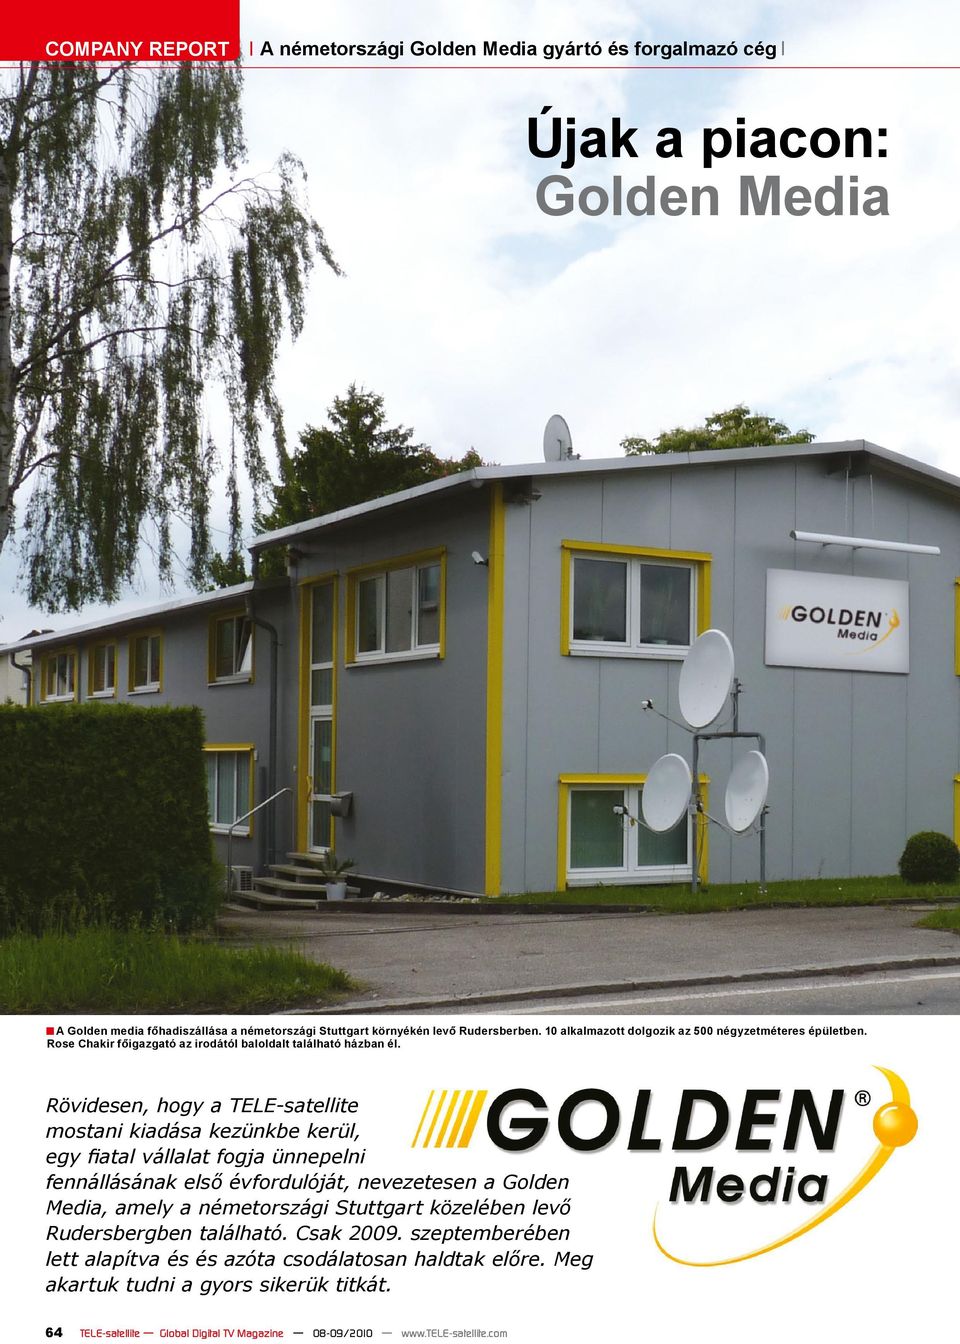 Rövidesen, hogy a TELE-satellite mostani kiadása kezünkbe kerül, egy fiatal vállalat fogja ünnepelni fennállásának első évfordulóját, nevezetesen a Golden Media, amely a németországi